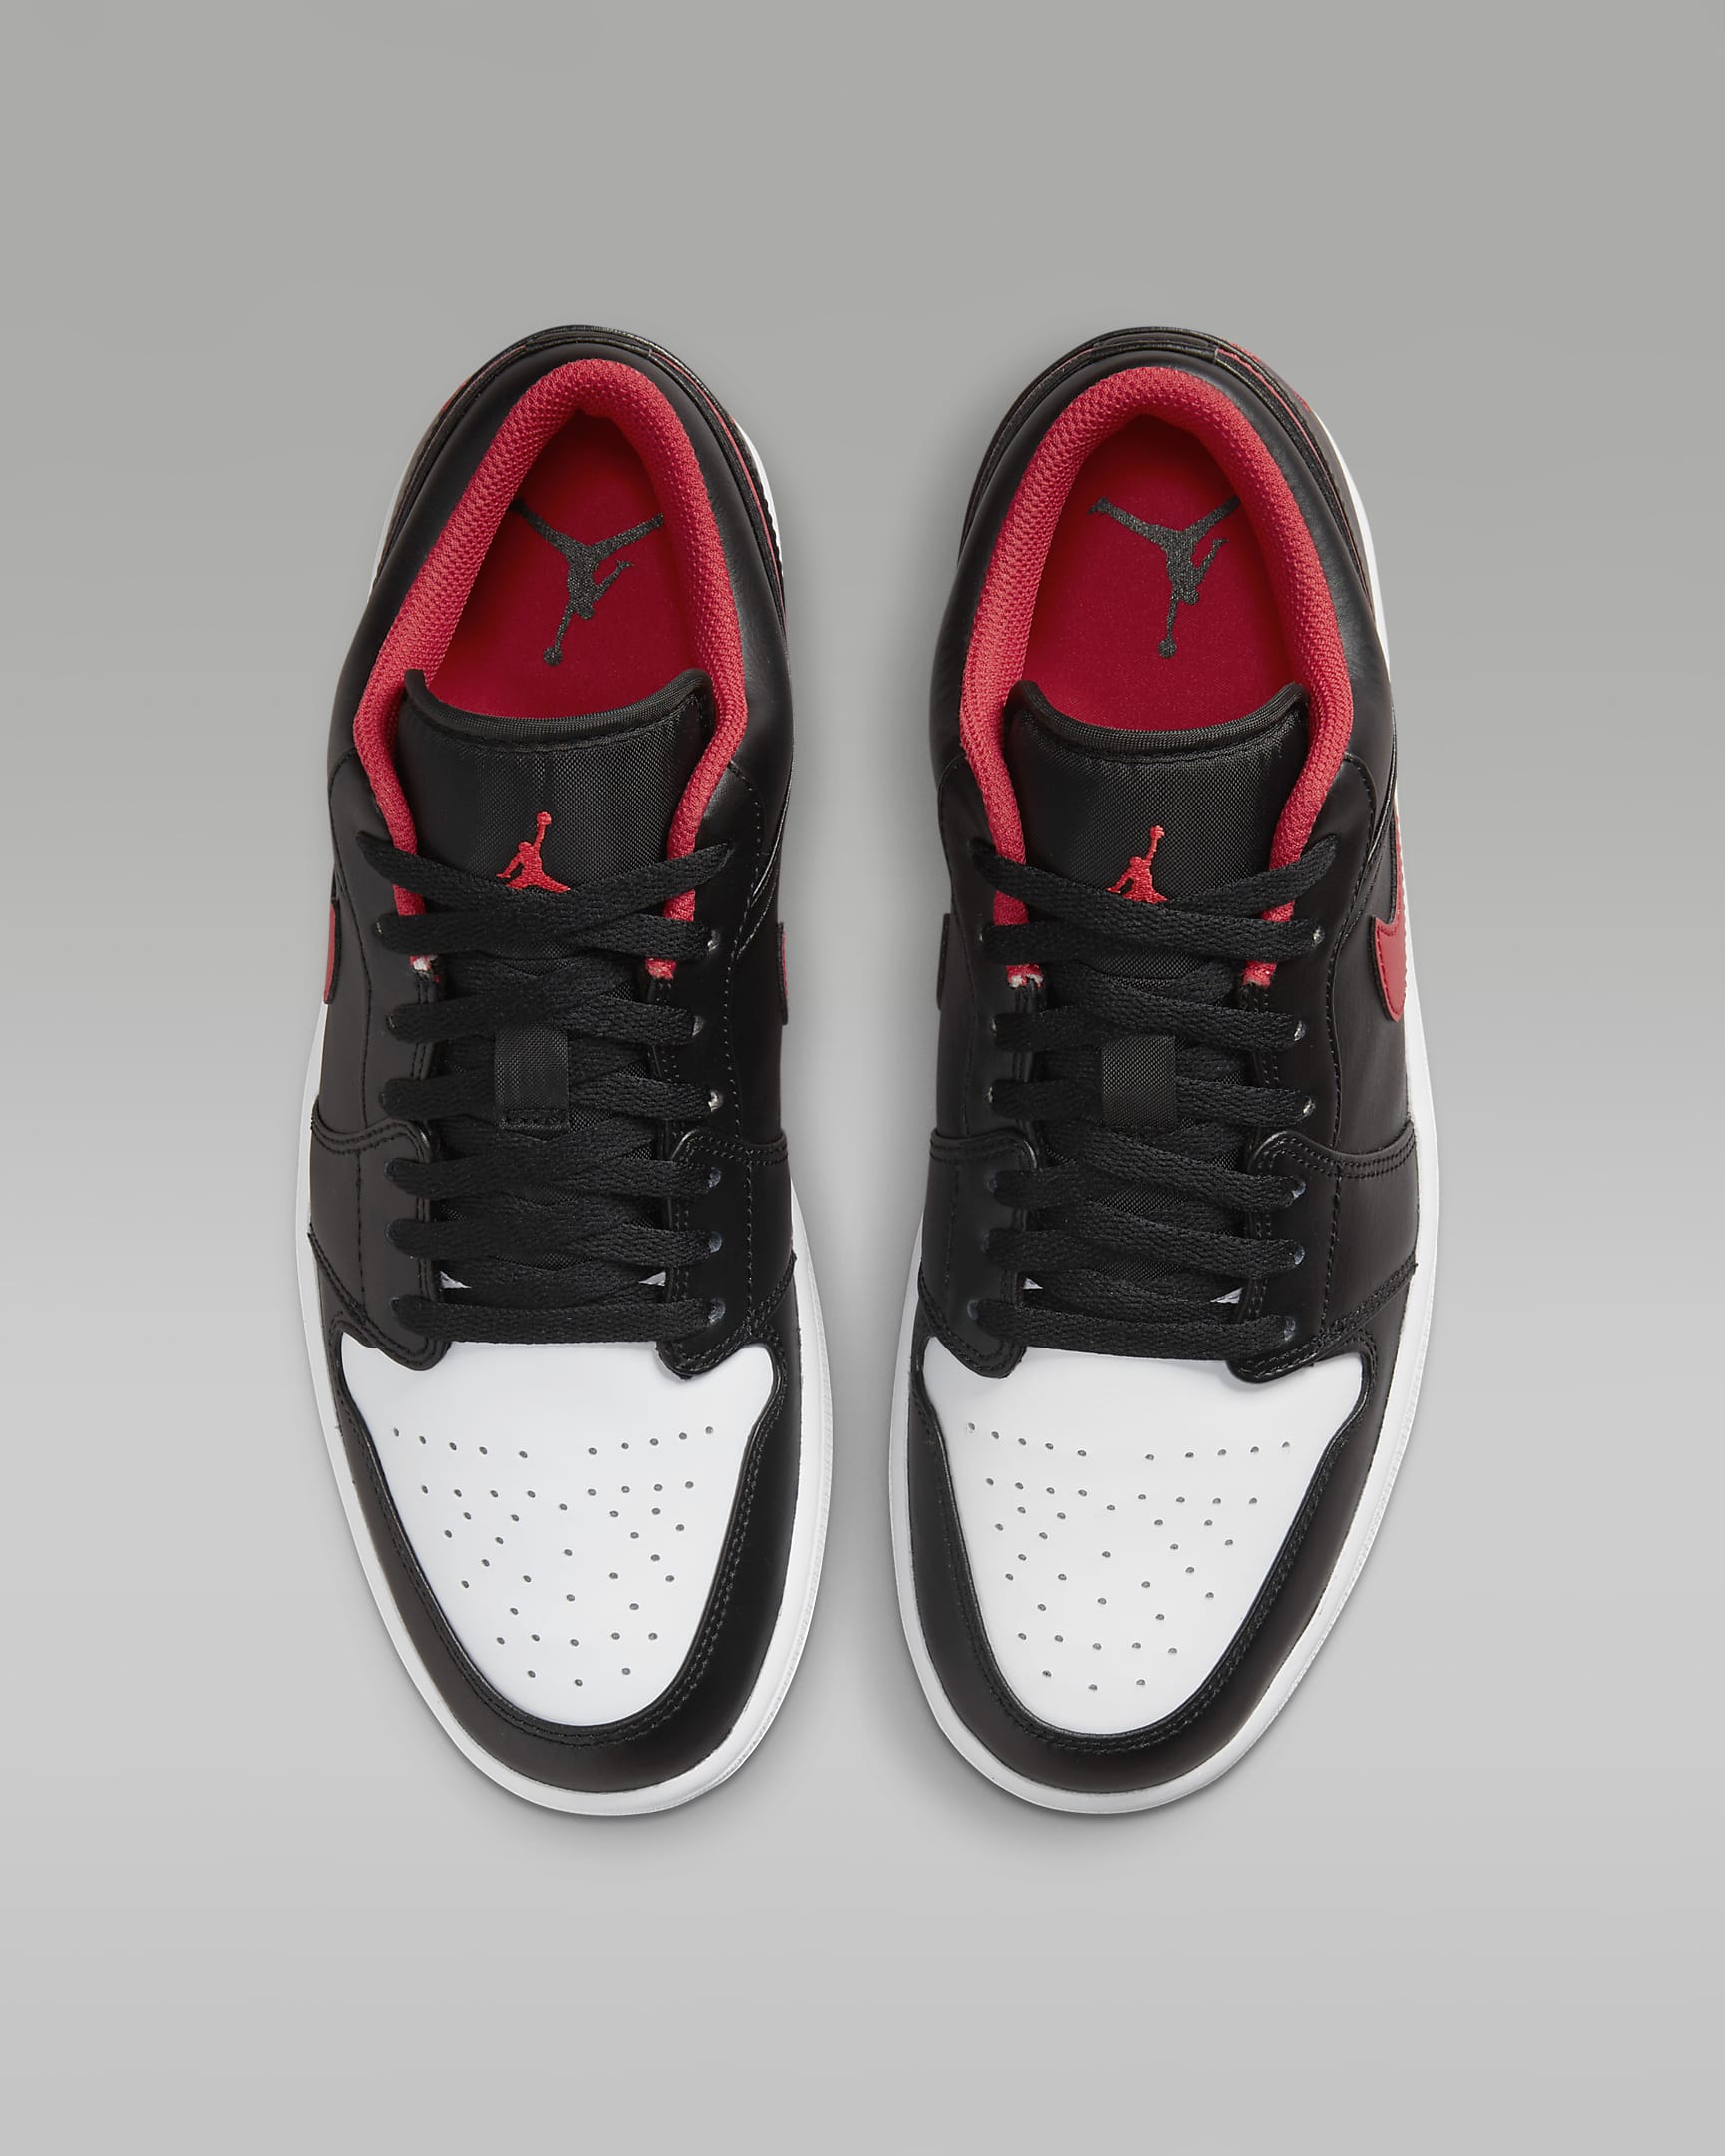 Chaussure Air Jordan 1 Low pour Homme - Noir/Blanc/Fire Red